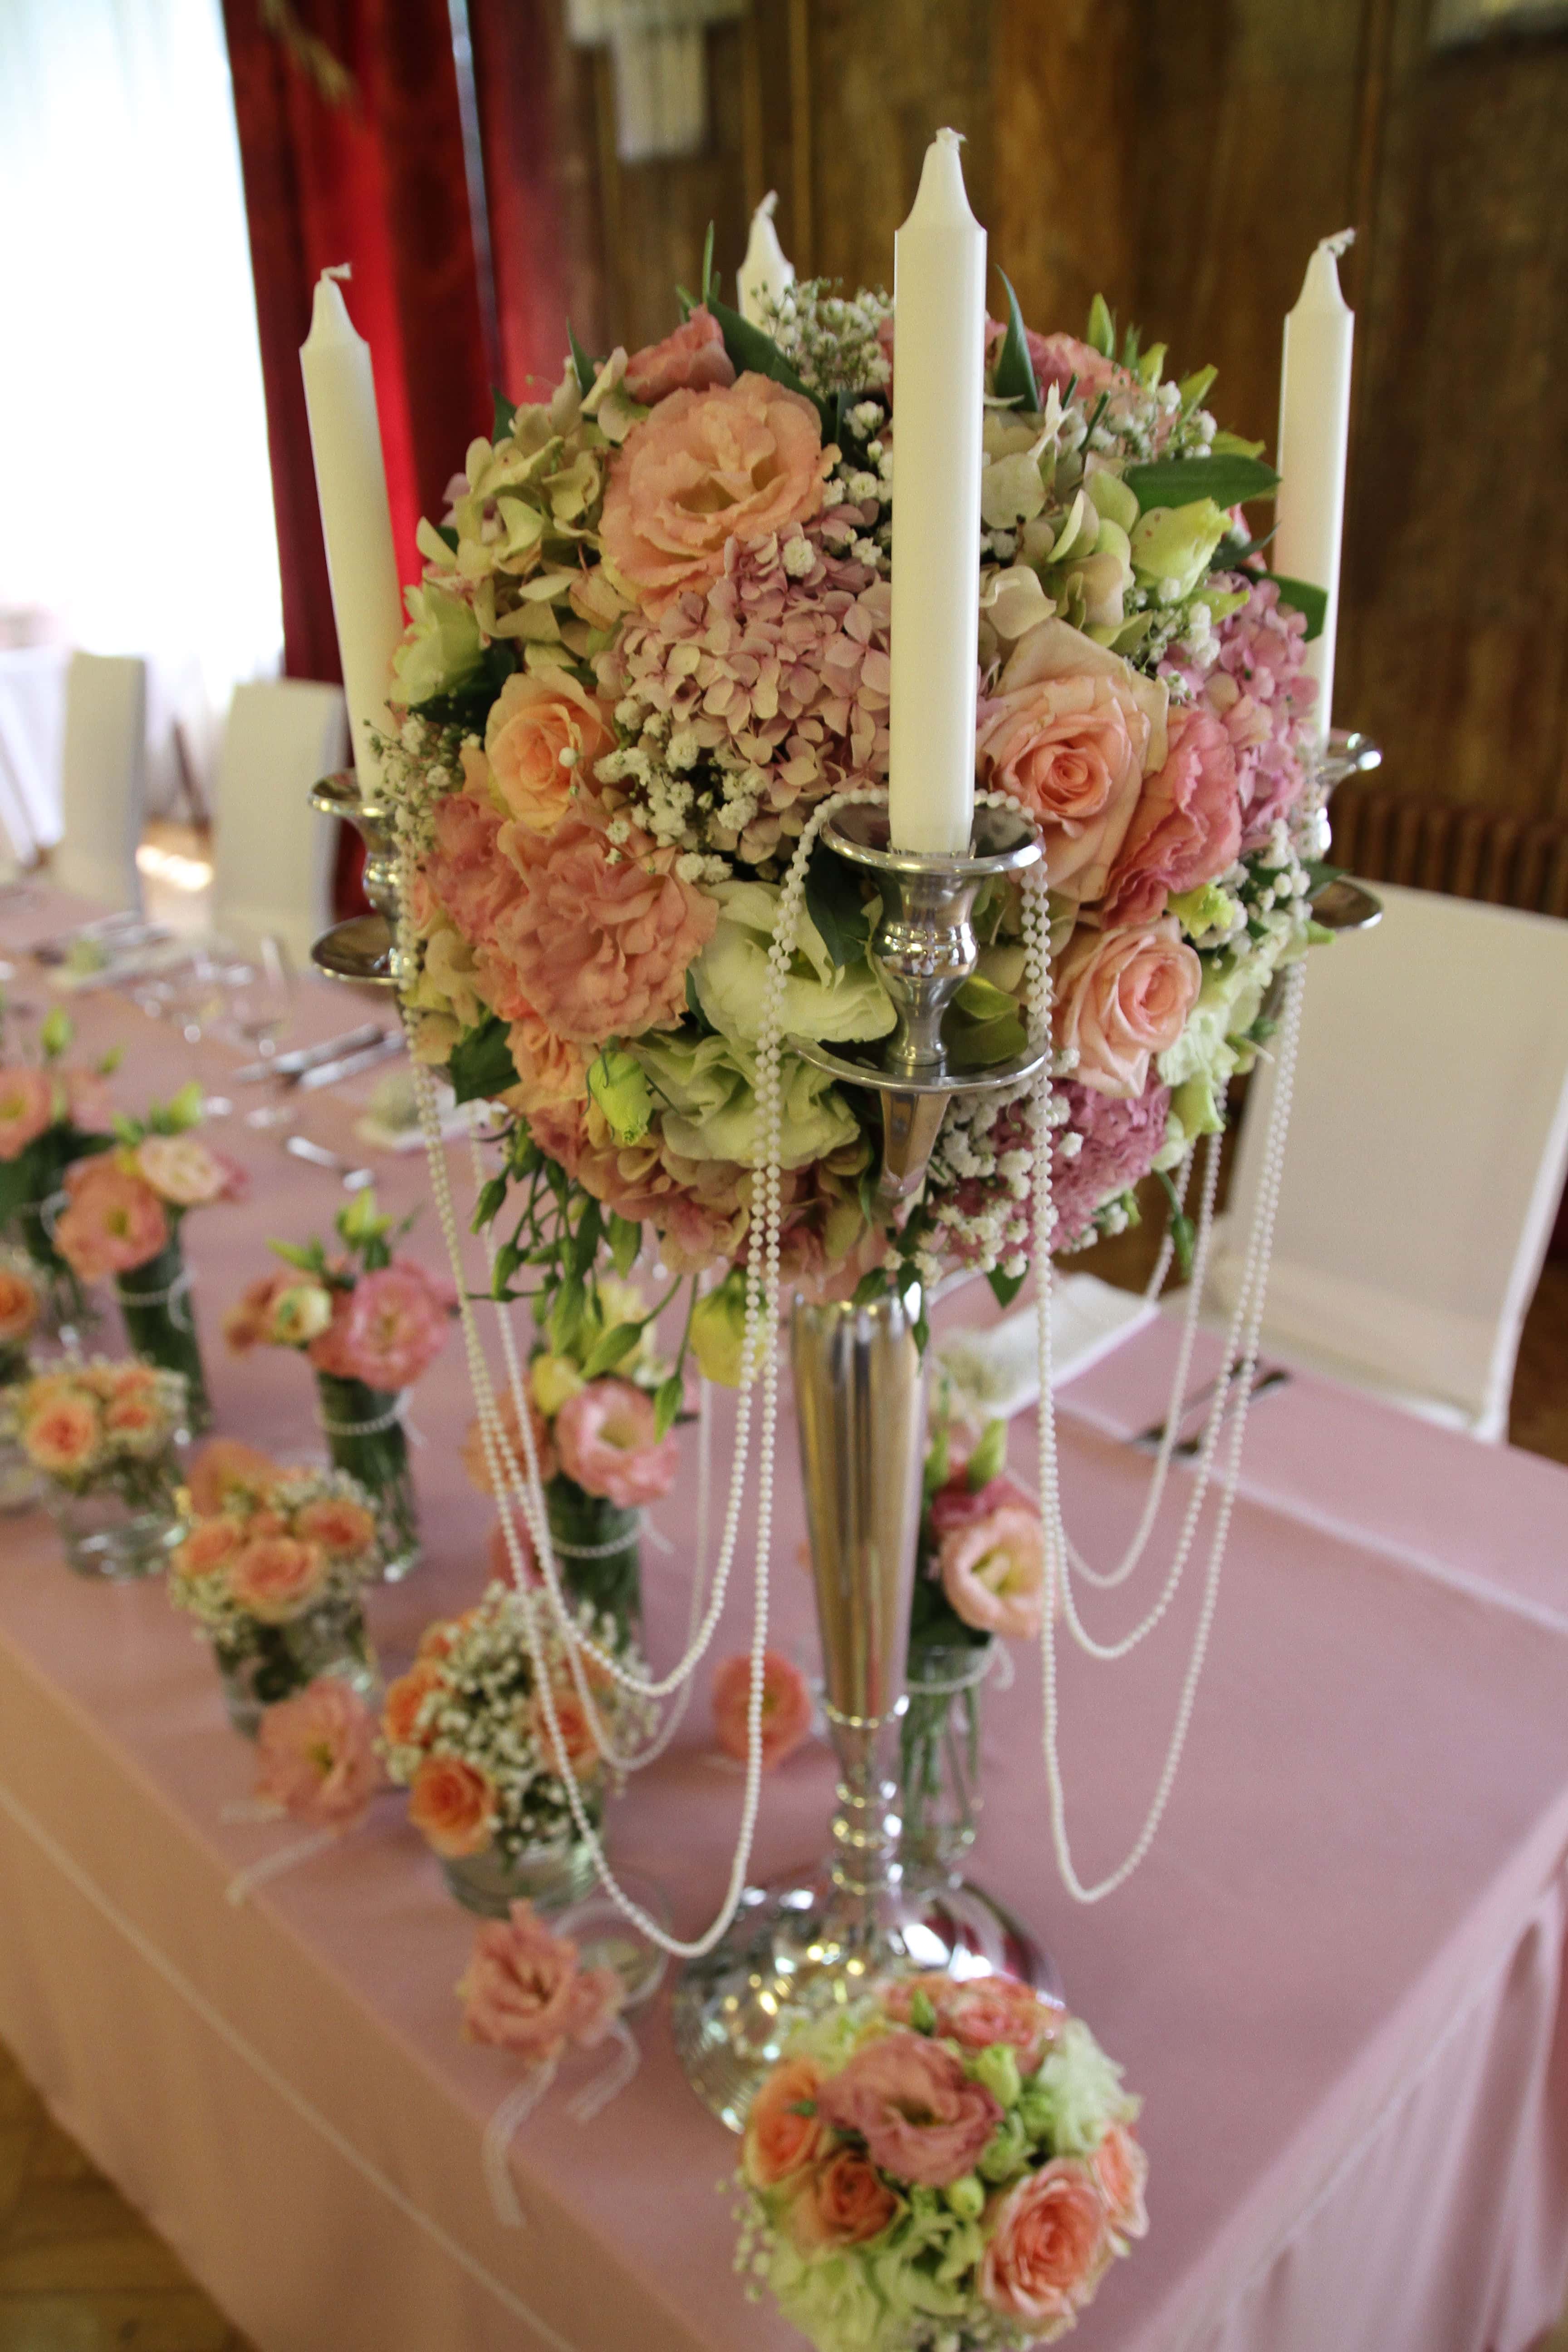 フリー写真画像 キャンドル ローソク足 室内装飾 結婚式 ウェディングブーケ 花束 装飾 配置 花瓶 花